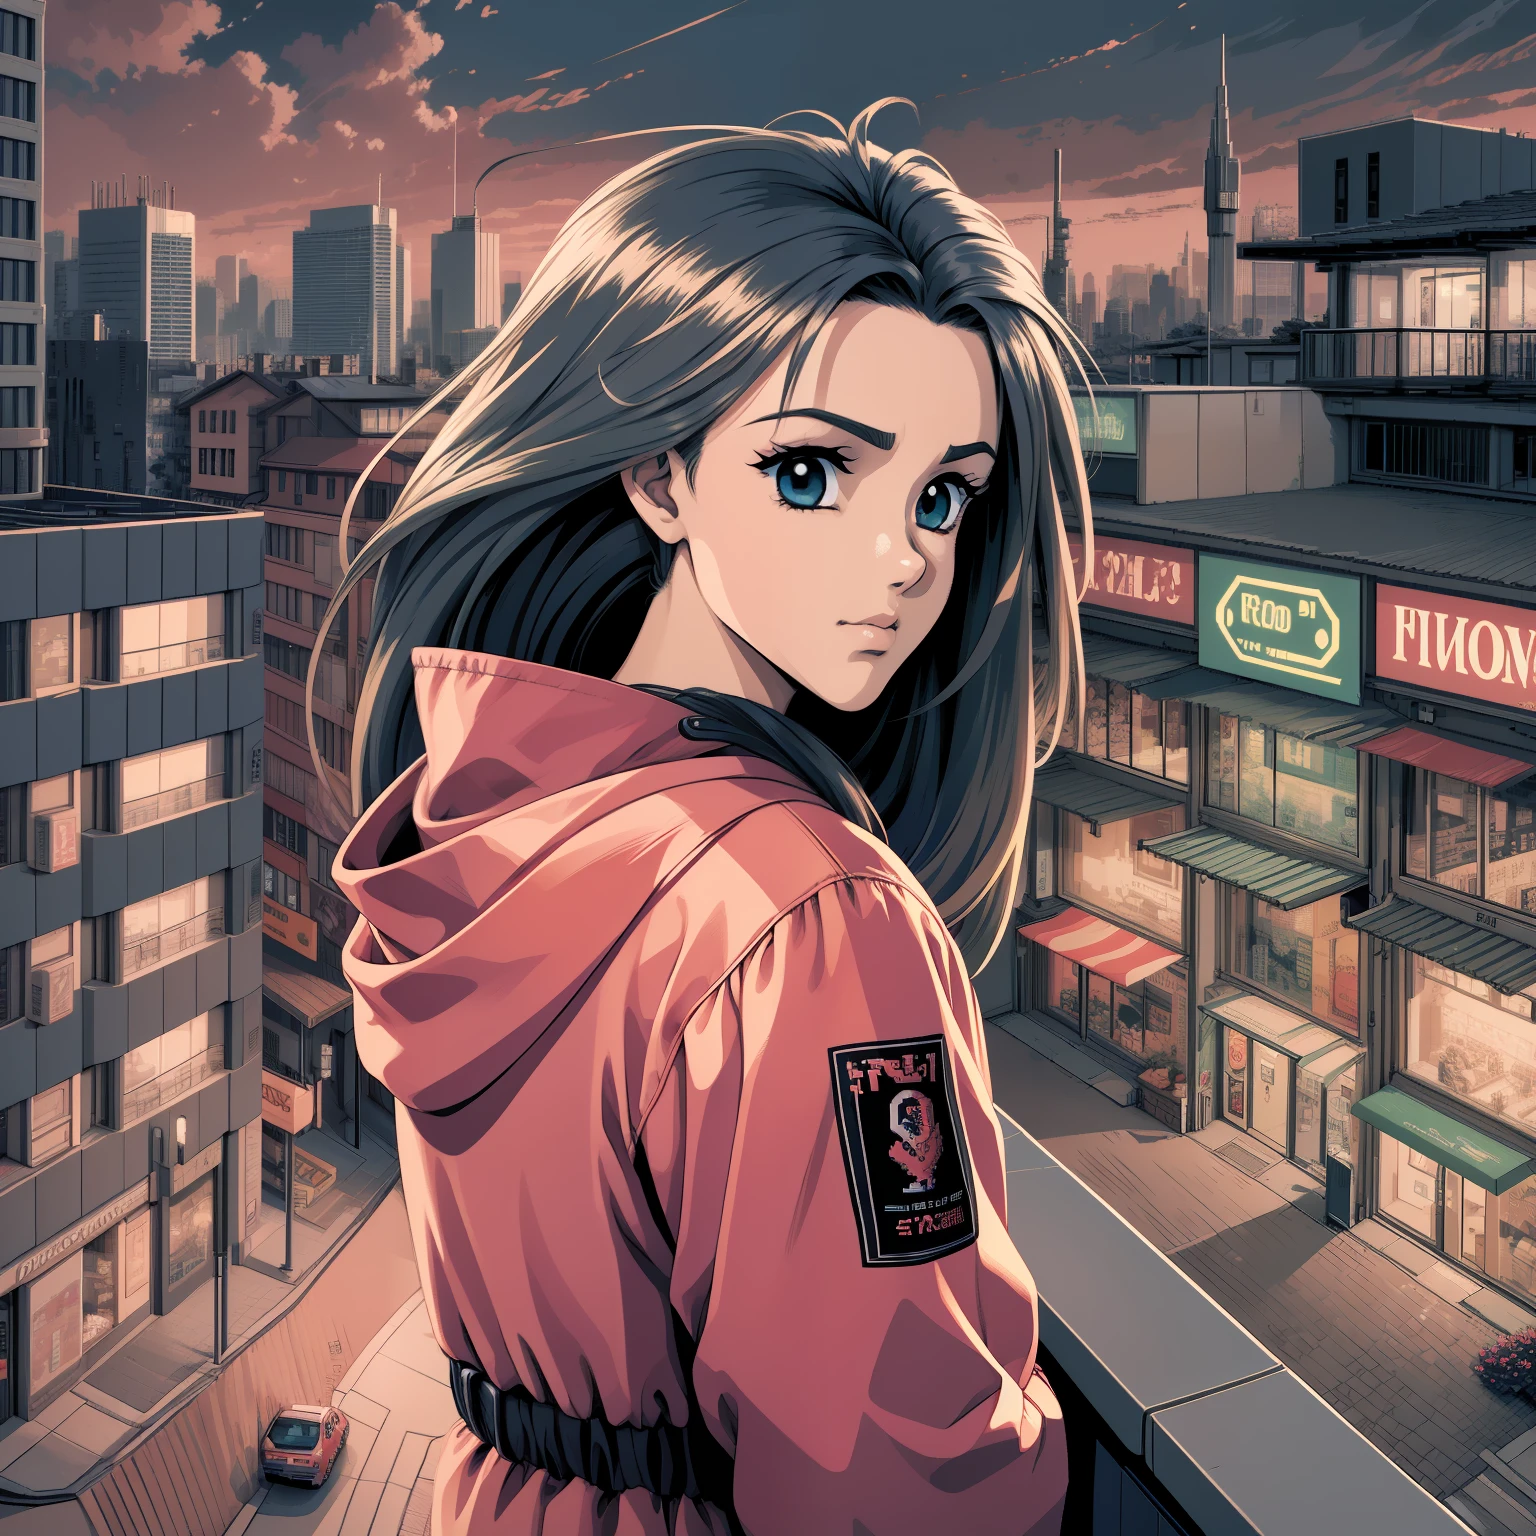 Anime girl d&#39;apparence mature portant une veste rouge regardant le paysage depuis le balcon d&#39;un appartement surplombant la ville la nuit, image avec perspective à la troisième personne, 3 0 4 0 x 1 4 4 0 pixel art détaillé, 3 0 4 0 x 1 4 4 0, Pixel art 32 bits,  art pixelisé vibrant, pixel art détaillé et coloré, pixel art animé soigneusement détaillé, pixel art animé animé détaillé à l&#39;origine, Pixel art néon détaillé, PC-98 pixel art, pixel art style policiernauts, 1 couleurs 6 bits